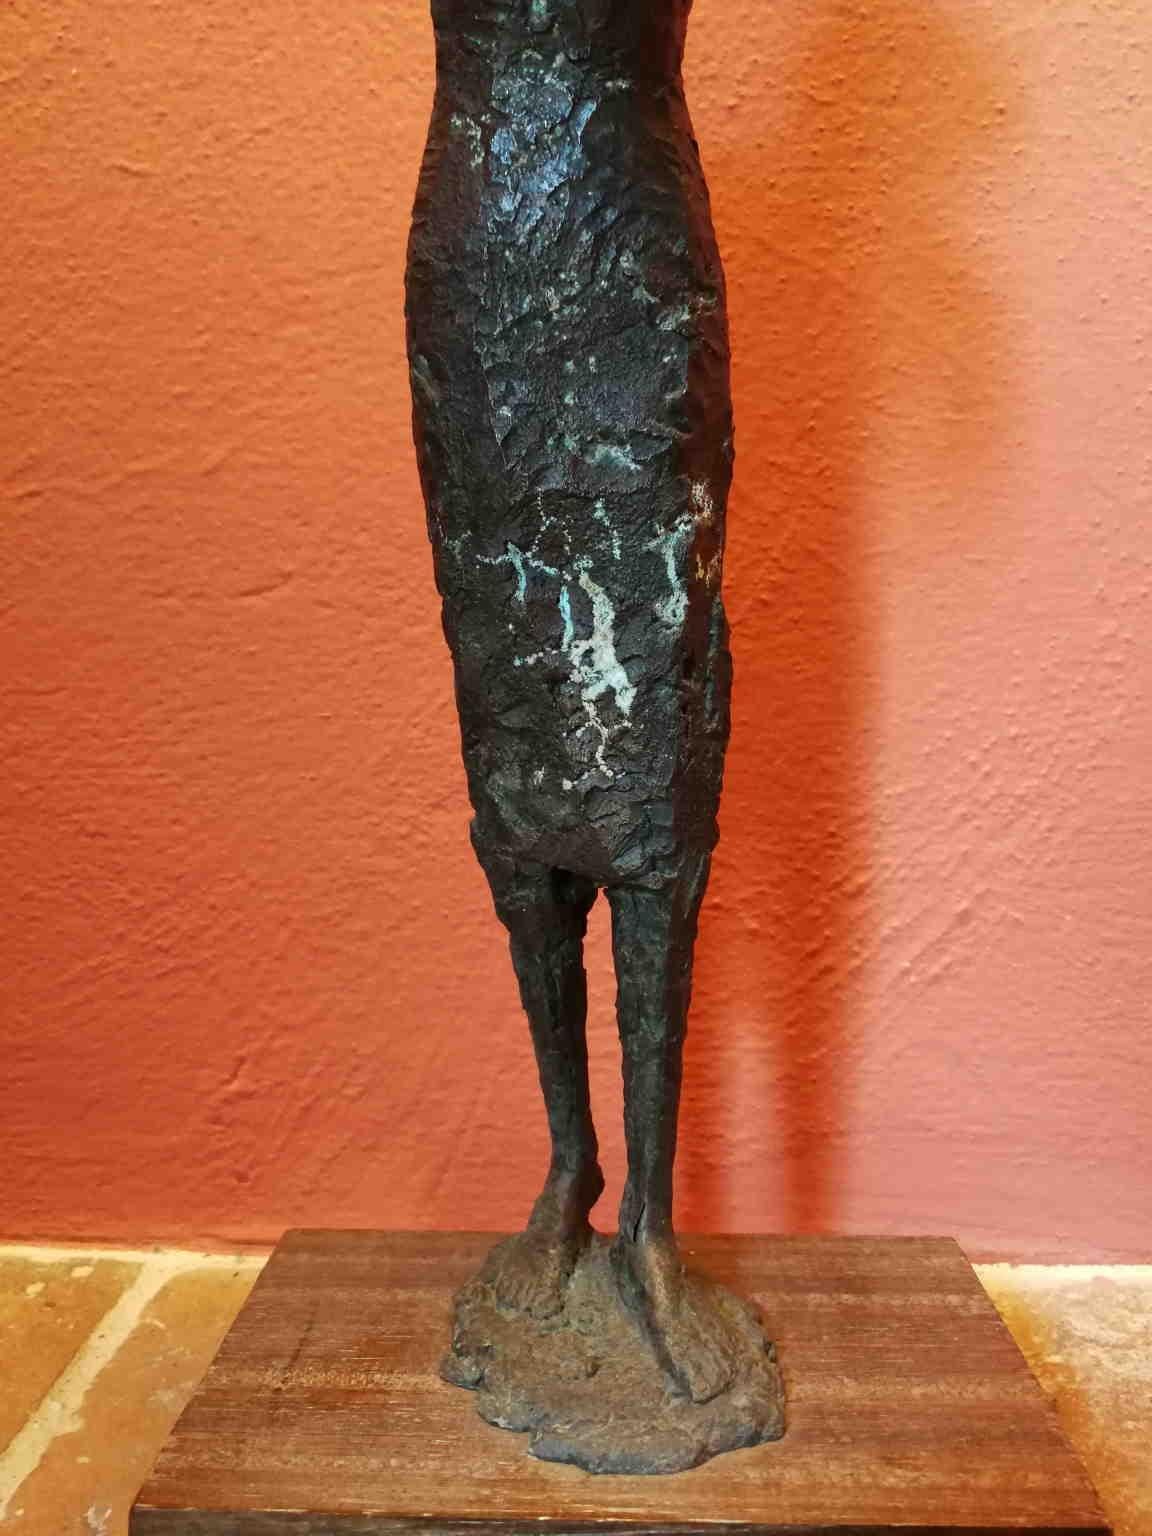 La petite statue de bronze représente une dame debout, les bras levés pour l'aider à regarder au loin. Il s'agit d'un casting unique.
Elle peut être datée de la moitié du XXe siècle grâce à la comparaison avec d'autres œuvres similaires de l'artiste